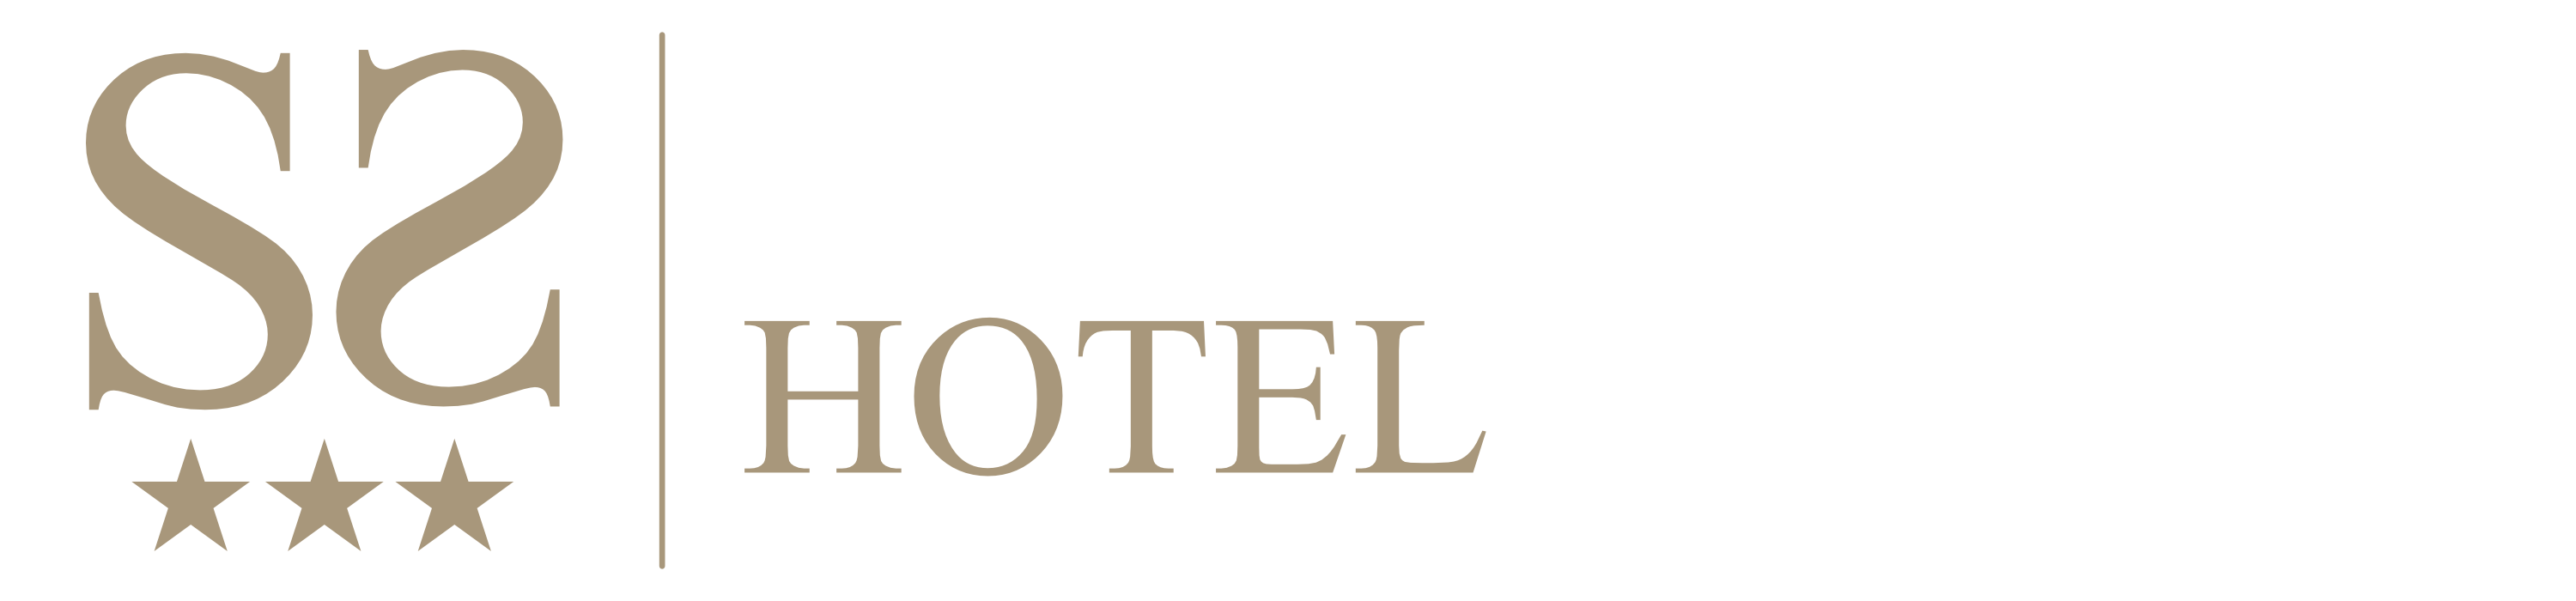 Stradivarius Hotel